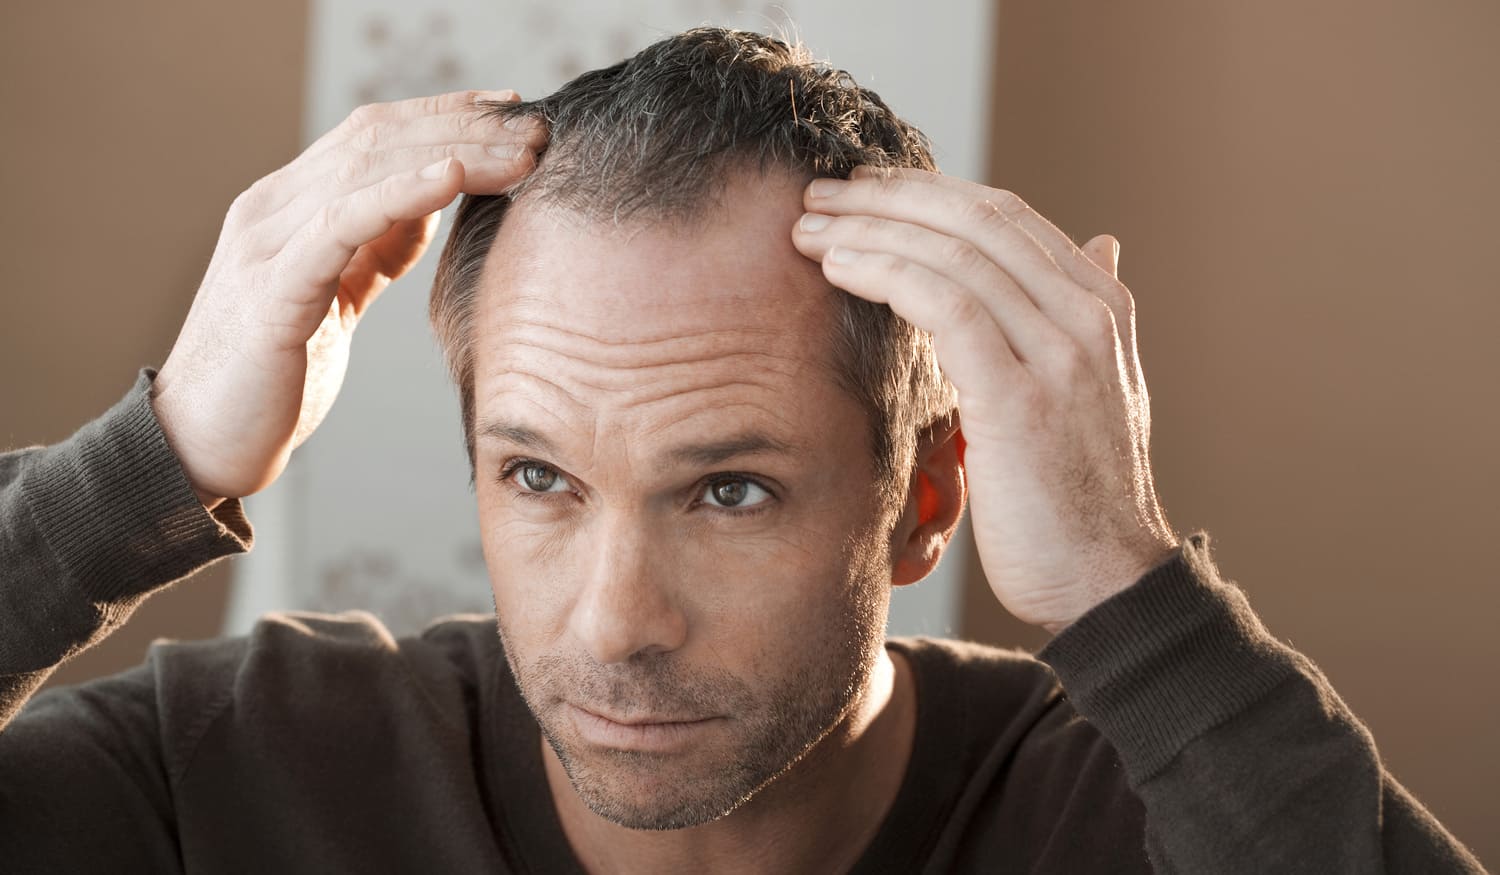 Das sind die häufigsten Ursachen für Haarausfall bei Männern – und so kannst du sie behandeln